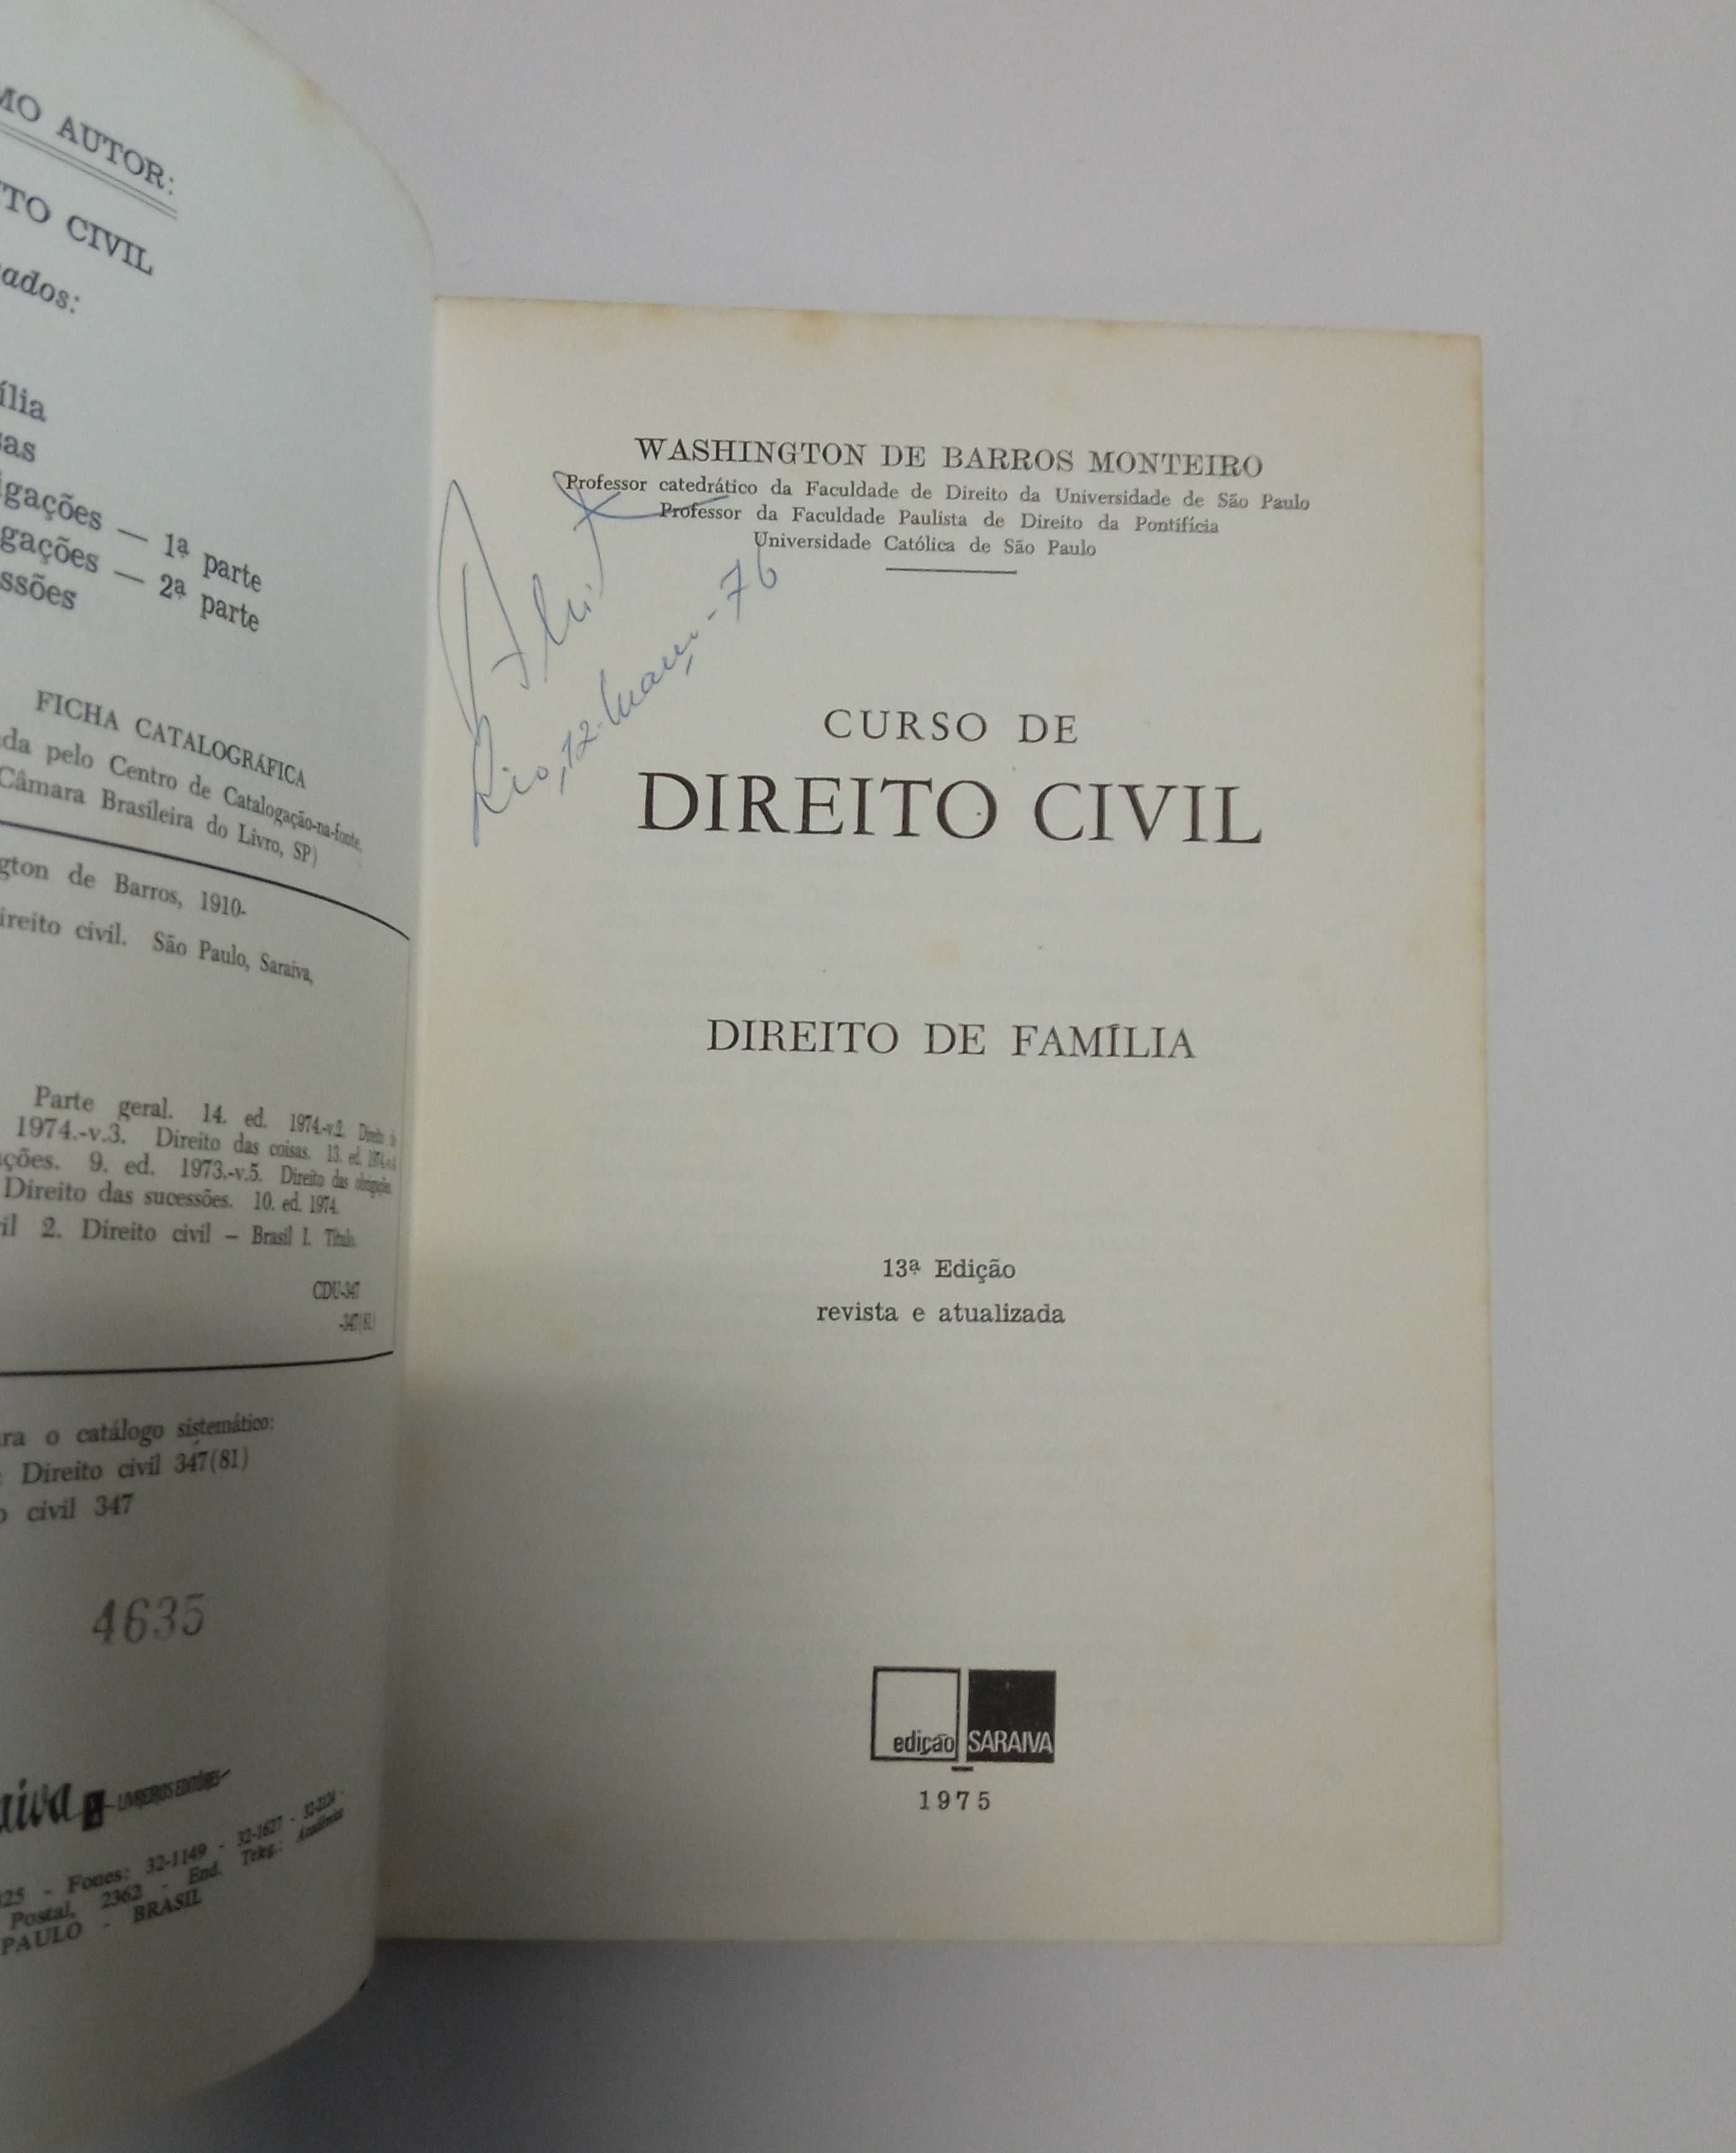 Coleção "Curso de Direito Civil", de Washington de Barros Monteiro